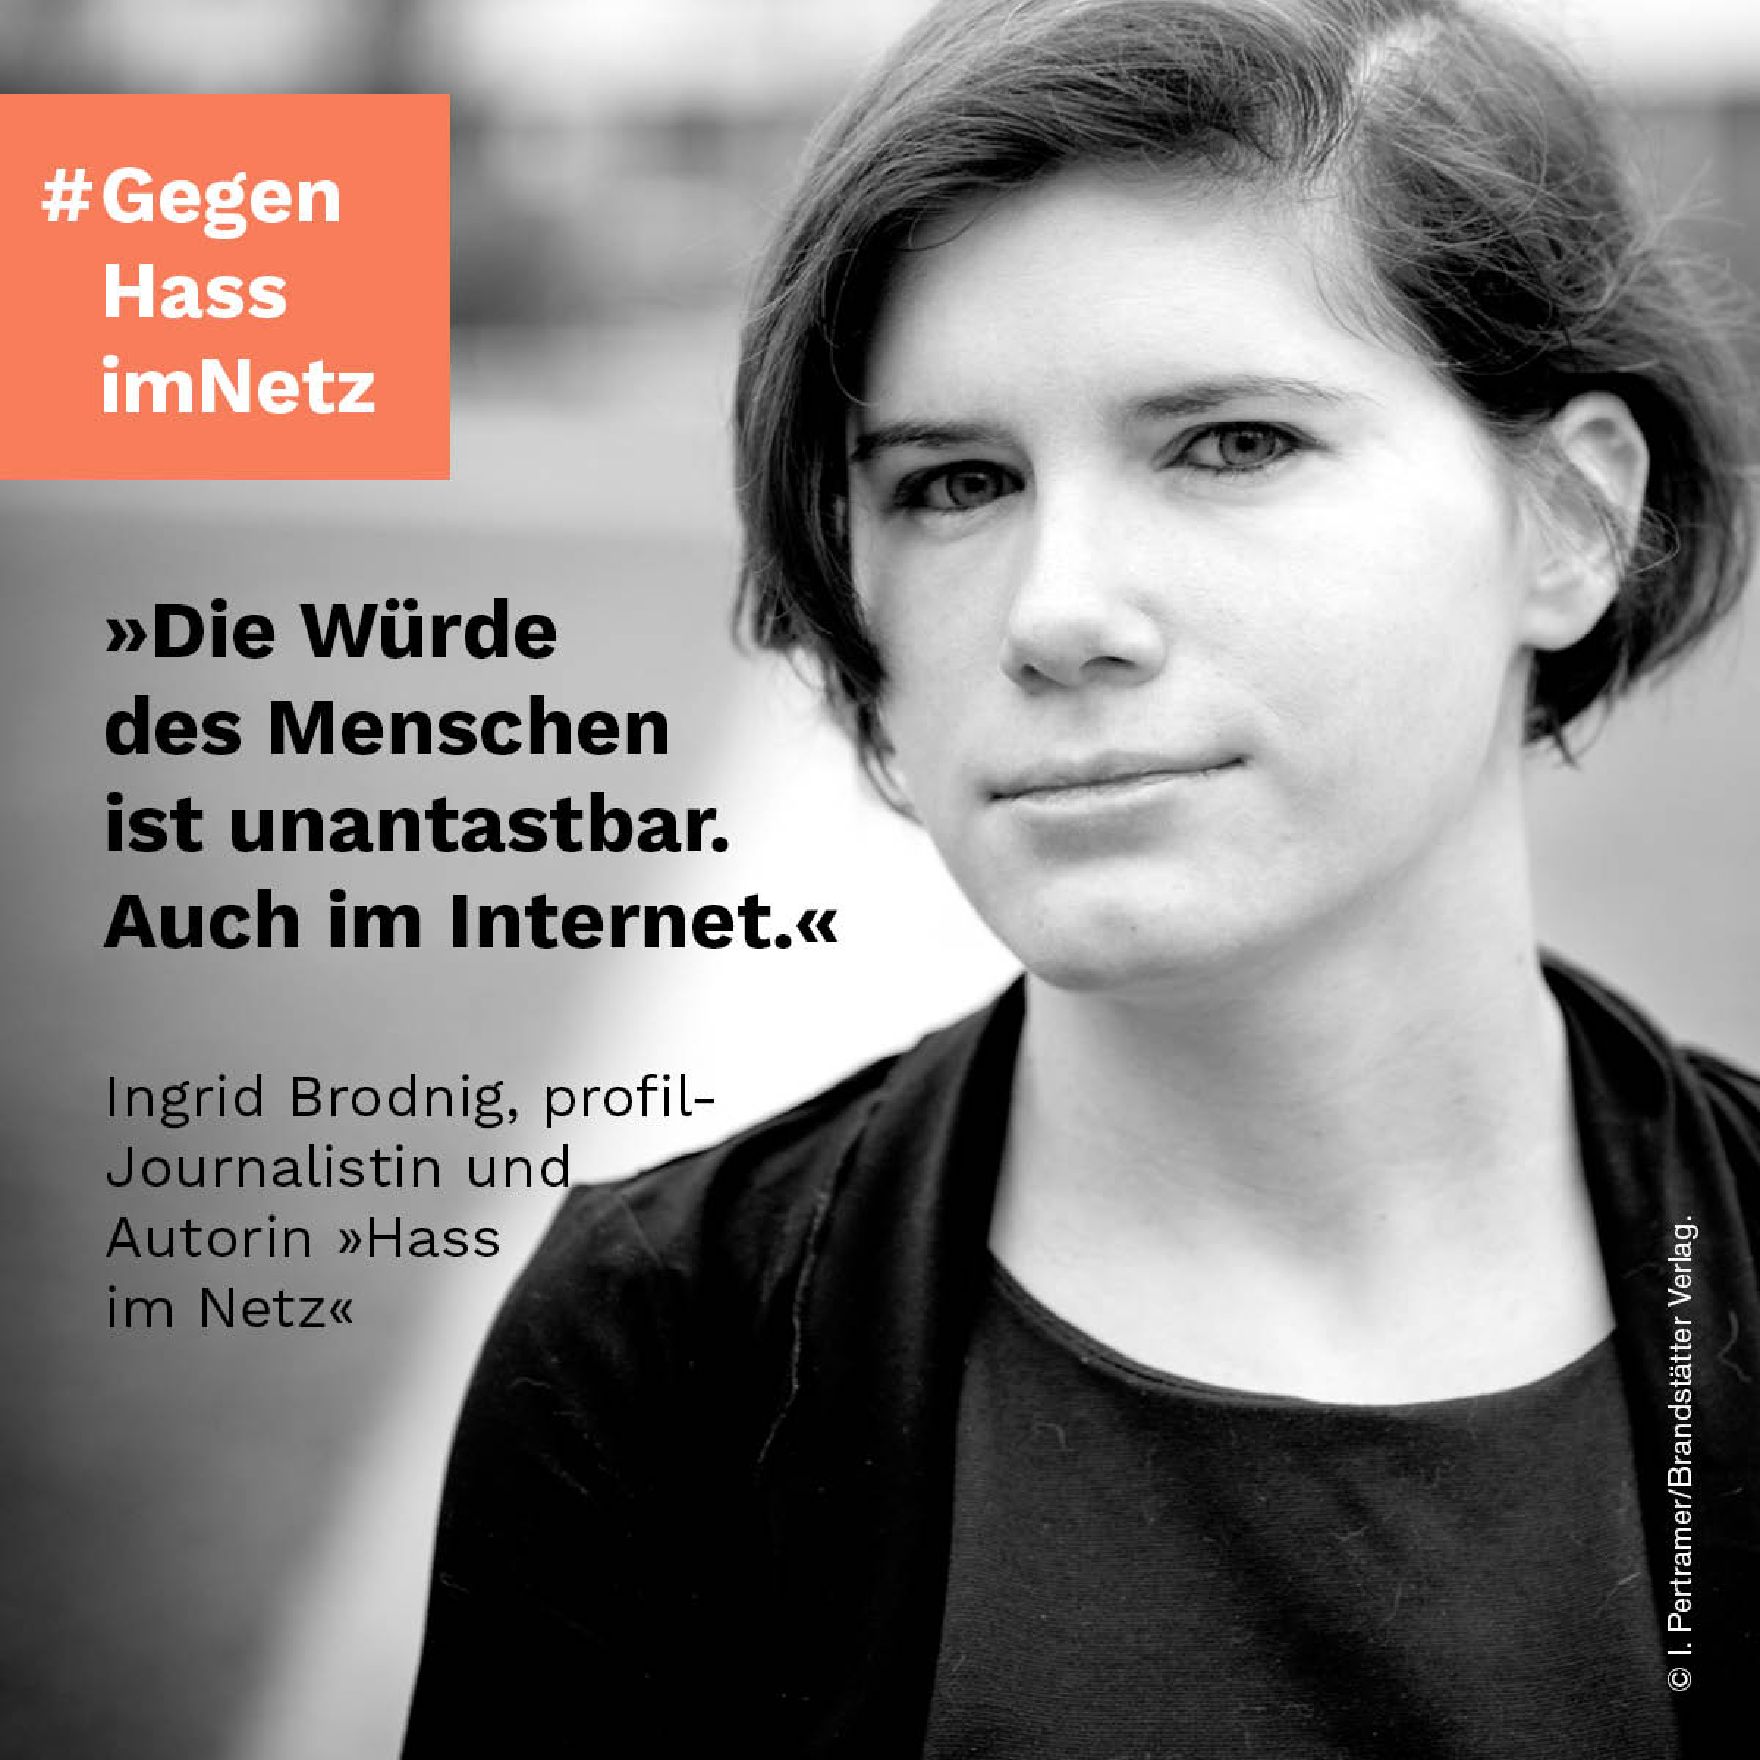 "Die Würde des Menschen ist unantastbar. Auch im Internet." Ingrid Brodnig, profil-Journalistin und Autorin "Hass im Netz"